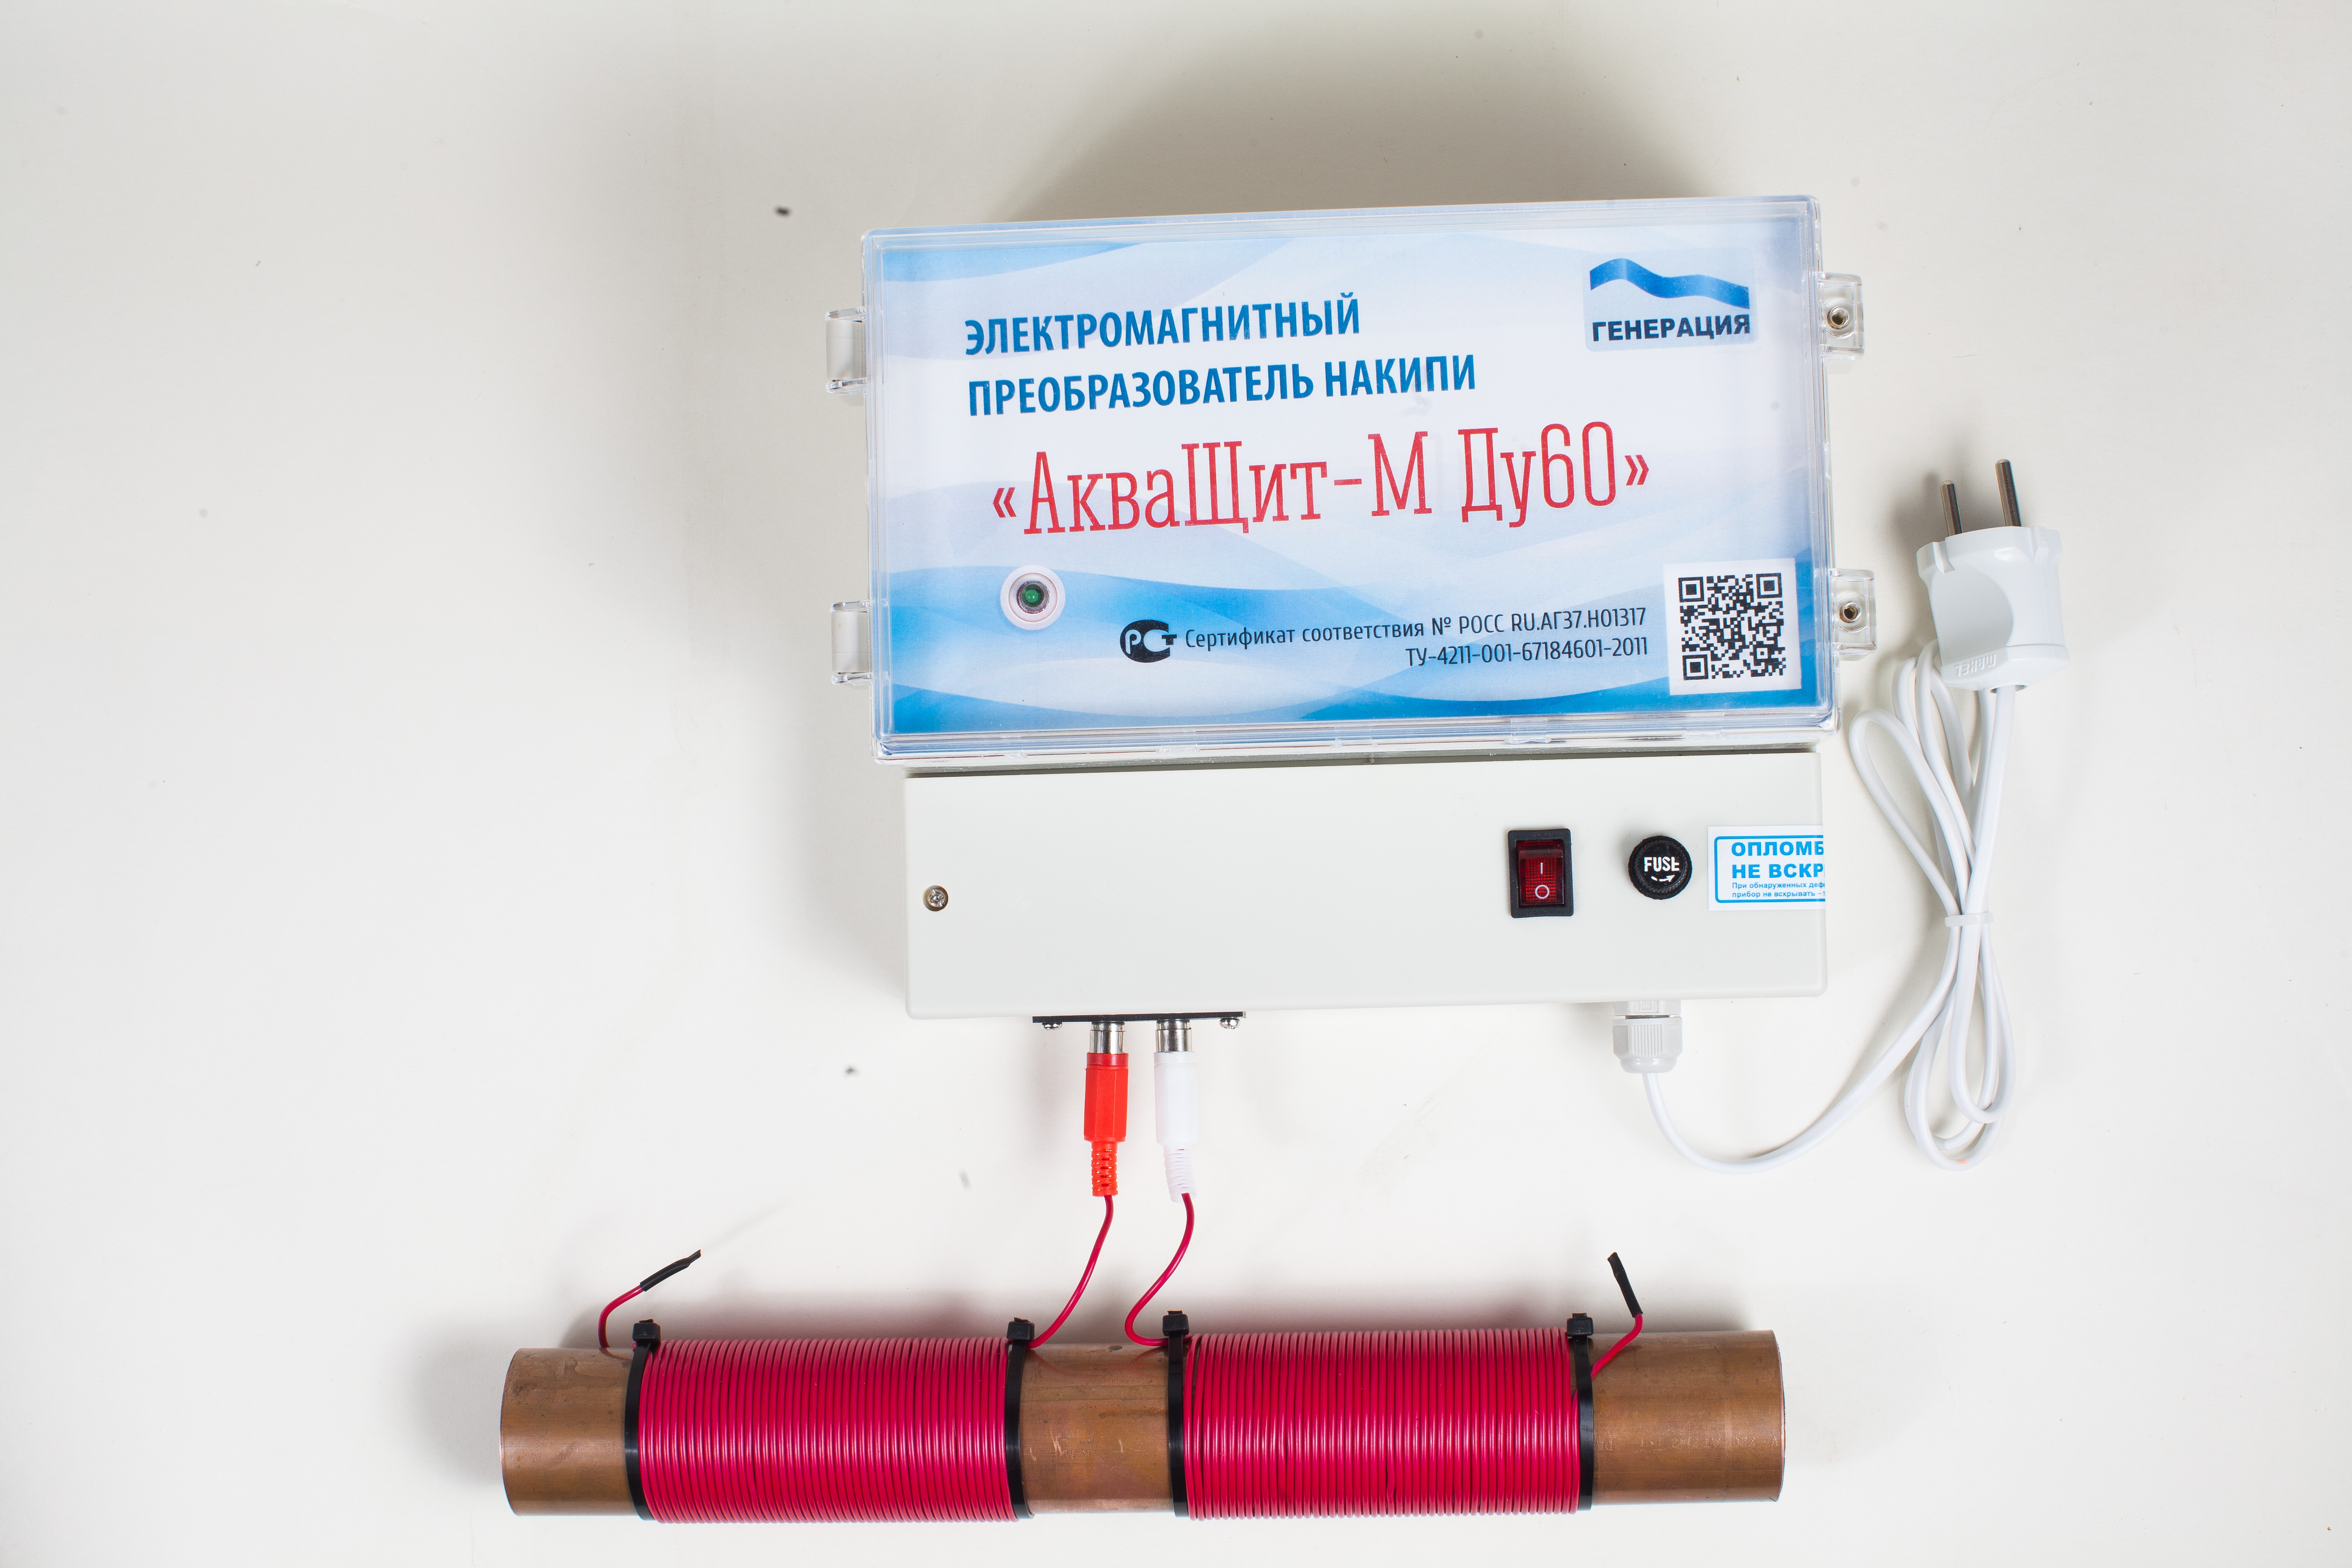 АкваЩит - электромагнитный умягчитель - фильтр воды Уфа